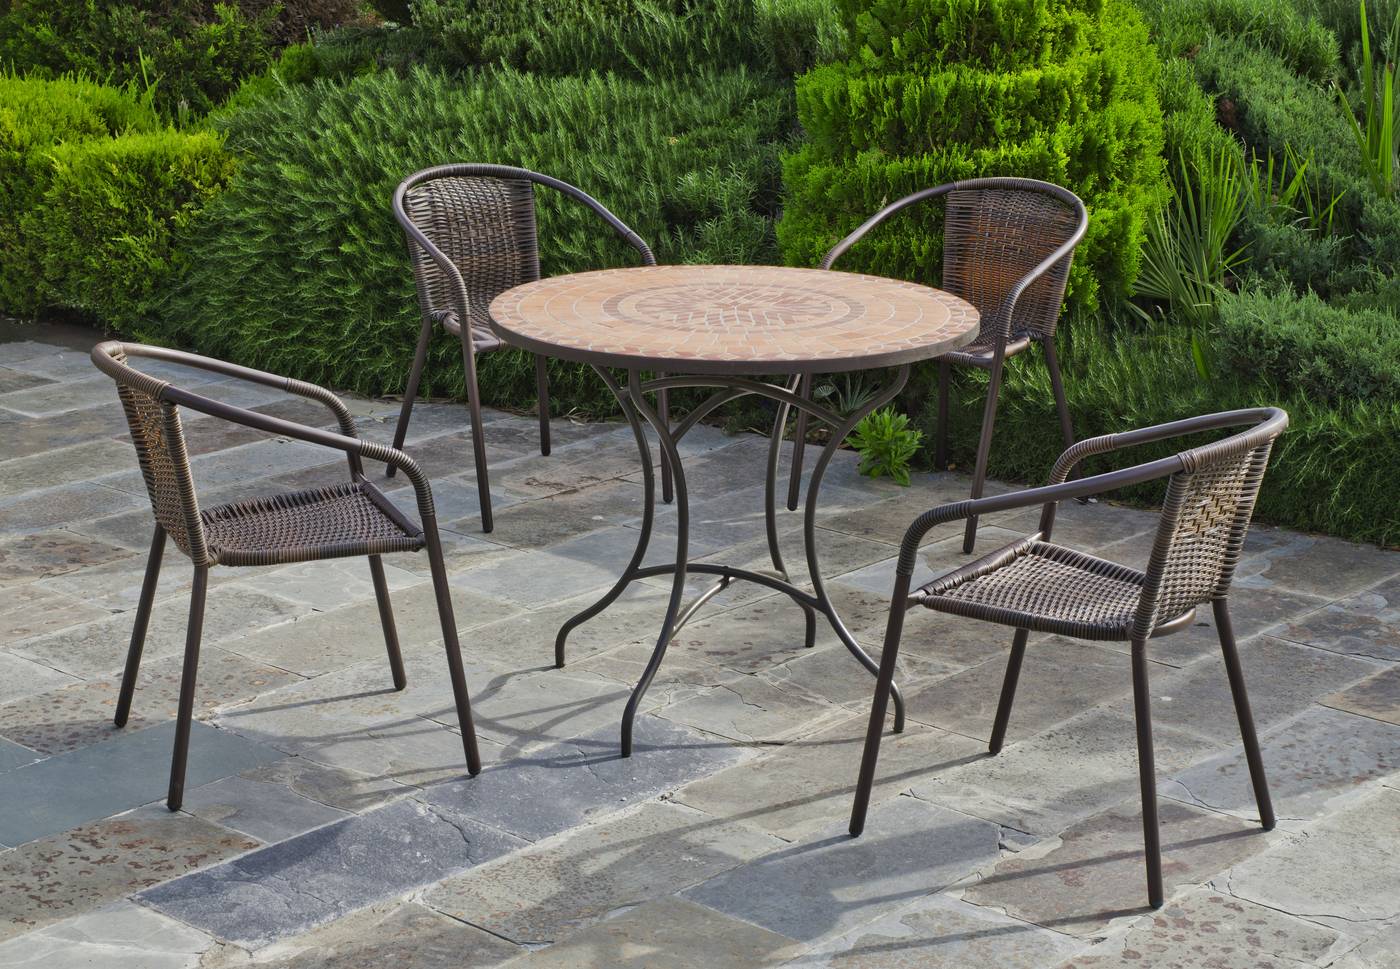 Conjunto de forja para jardín: 1 mesa con panel mosaico + 4 sillones de acero y trenzado sintético